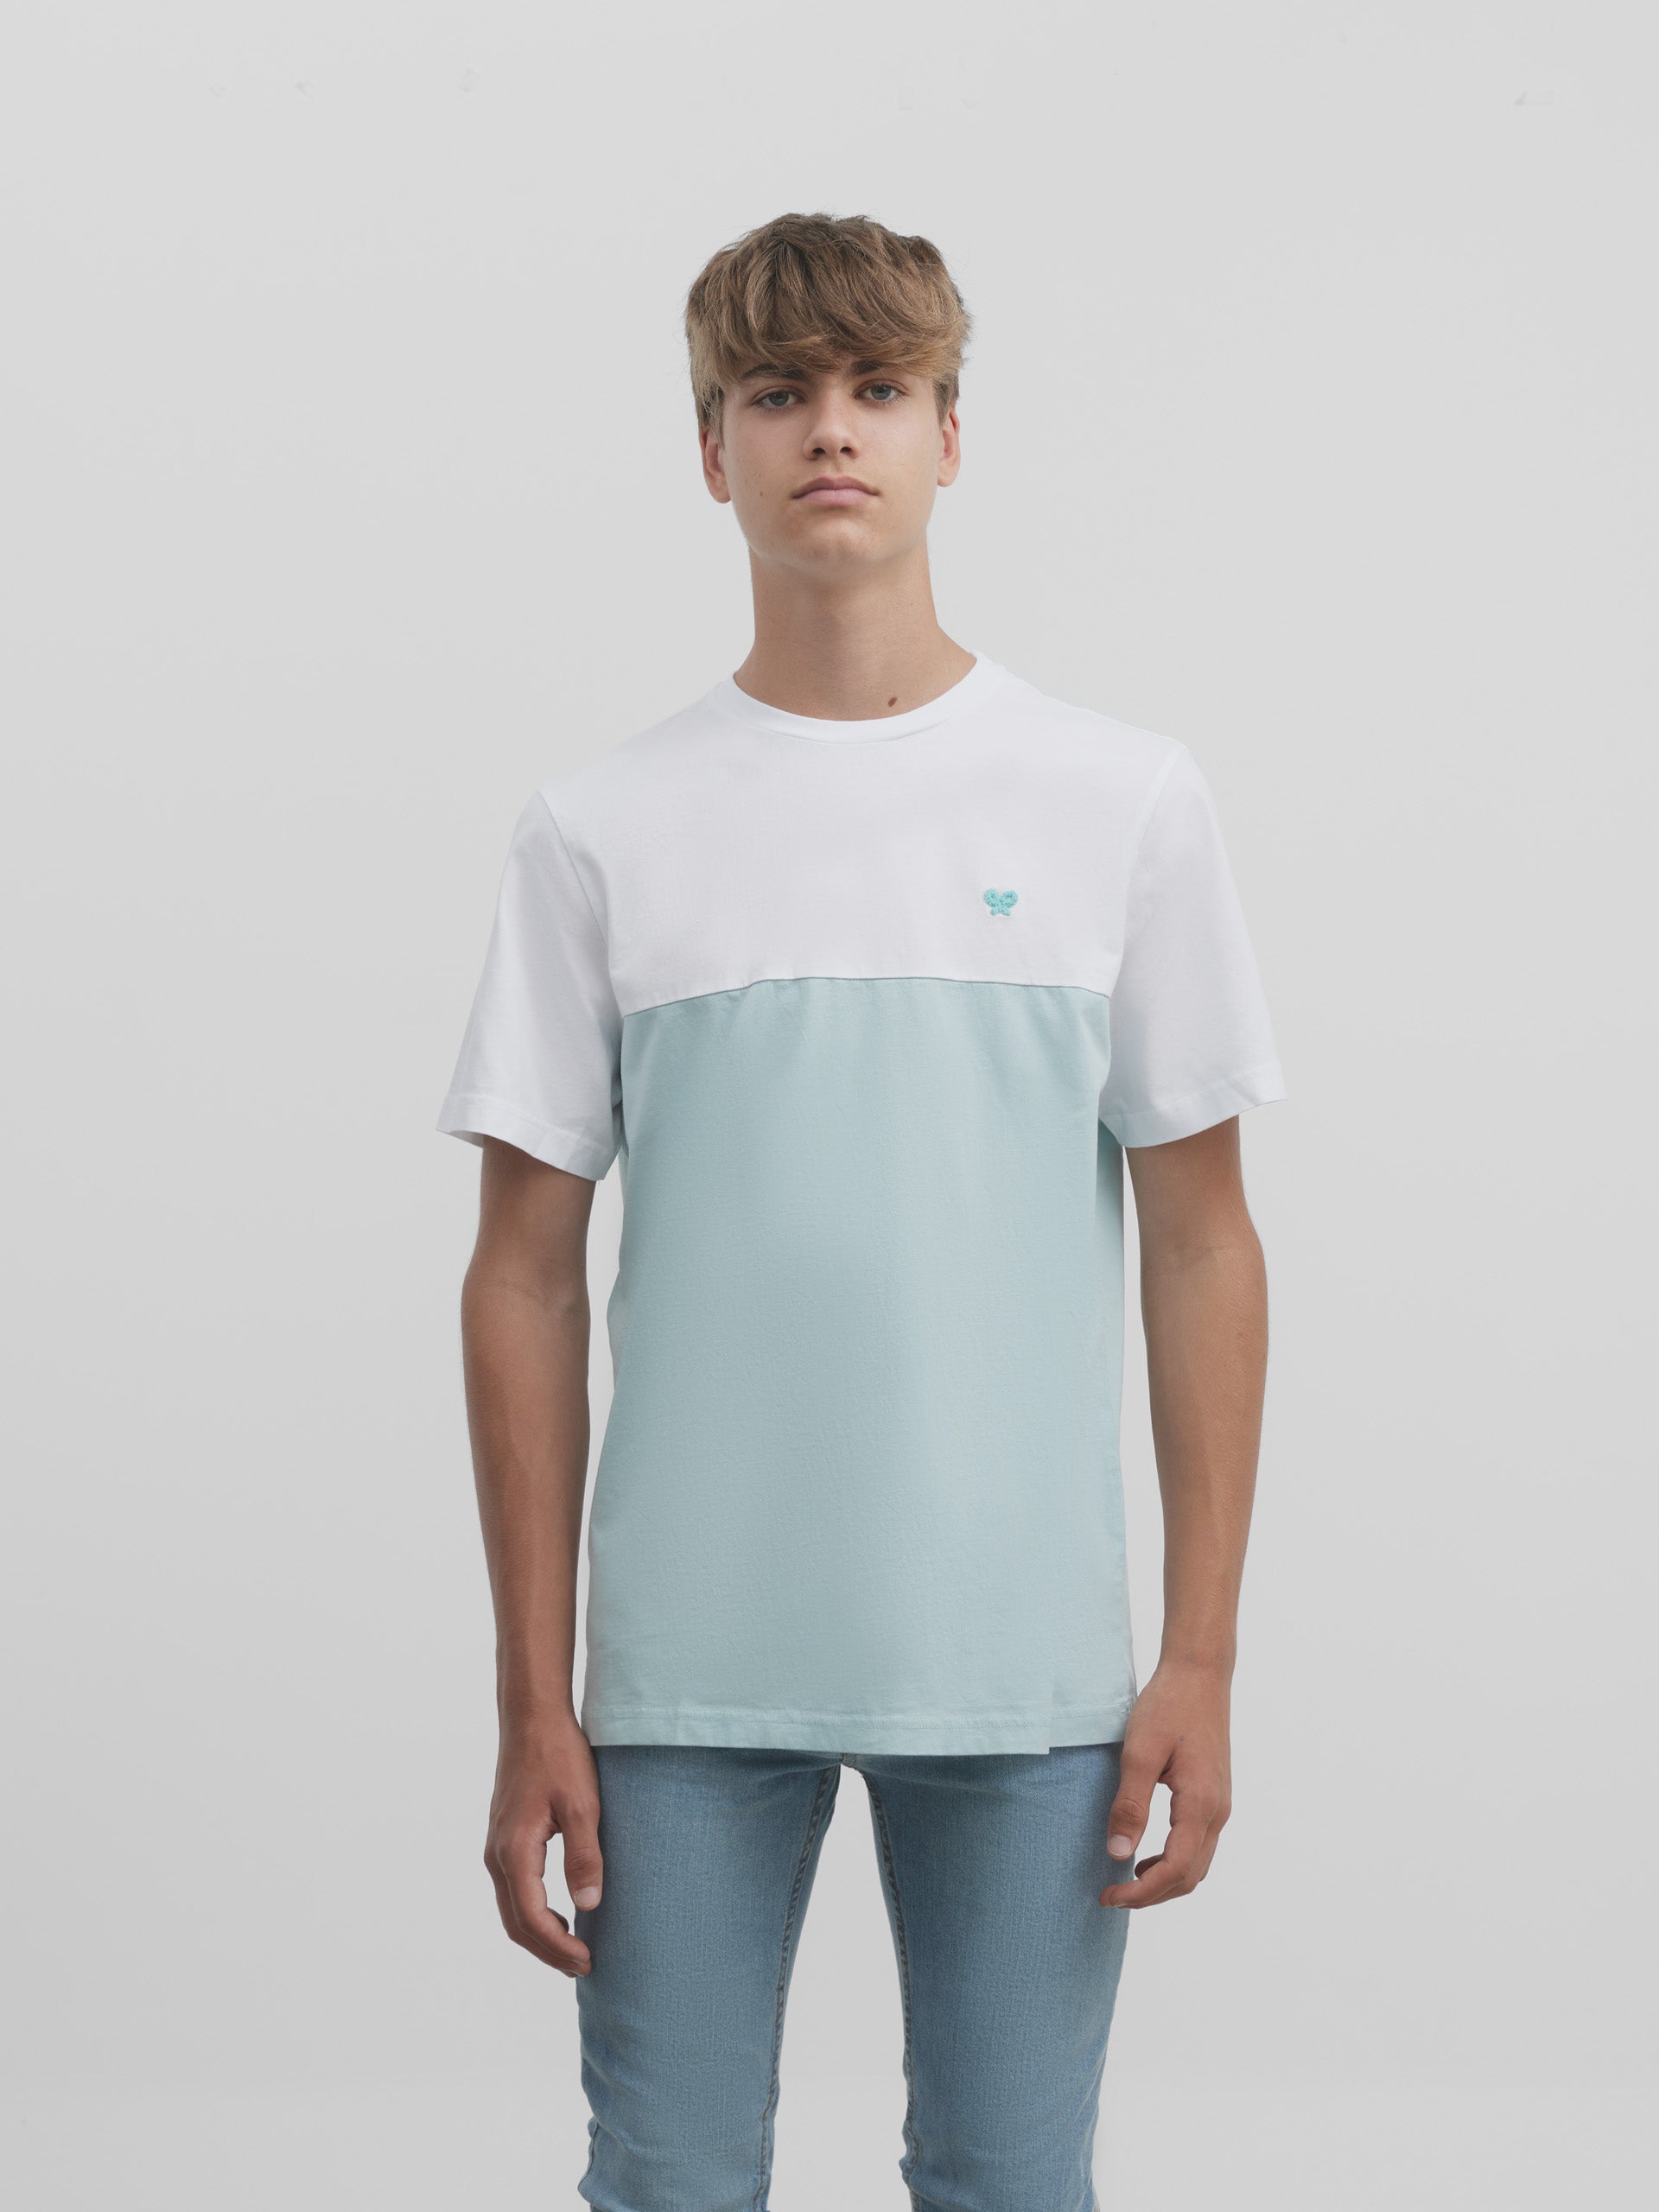 Camiseta bicolor aguamarina blanca